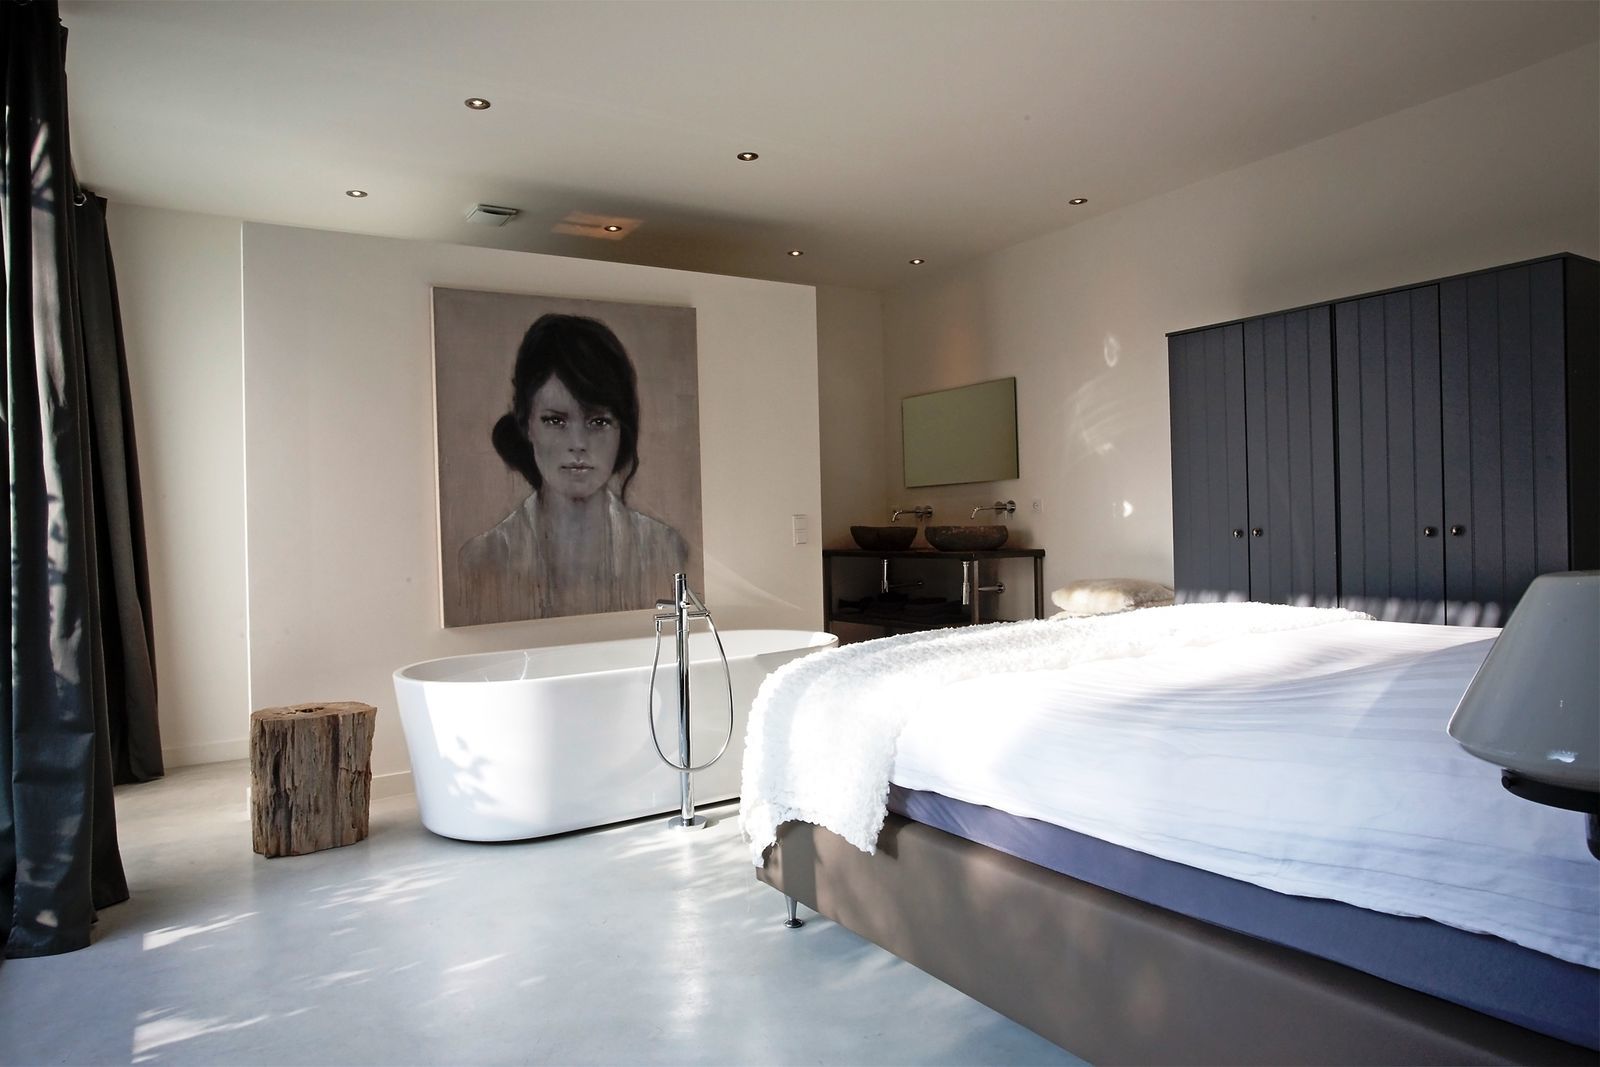 Stalen Boshuis - luxe vakantiehuis met sauna in Brabant